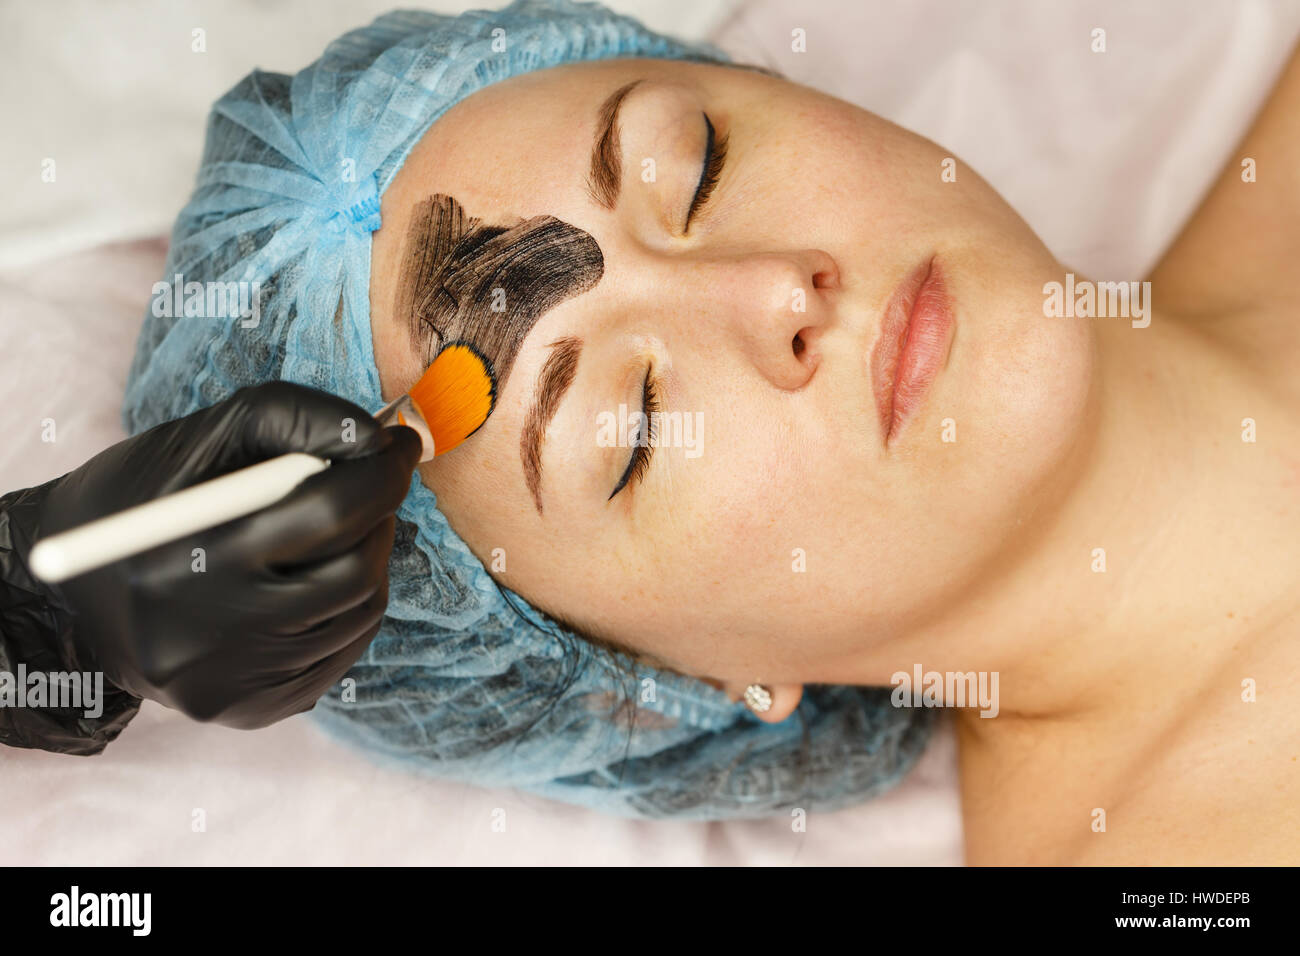 La cosmetologist applique le nanogel de carbone pour la peau du visage du  client. Préparation pour le traitement au laser de la peau. Peeling visage  de carbone Photo Stock - Alamy